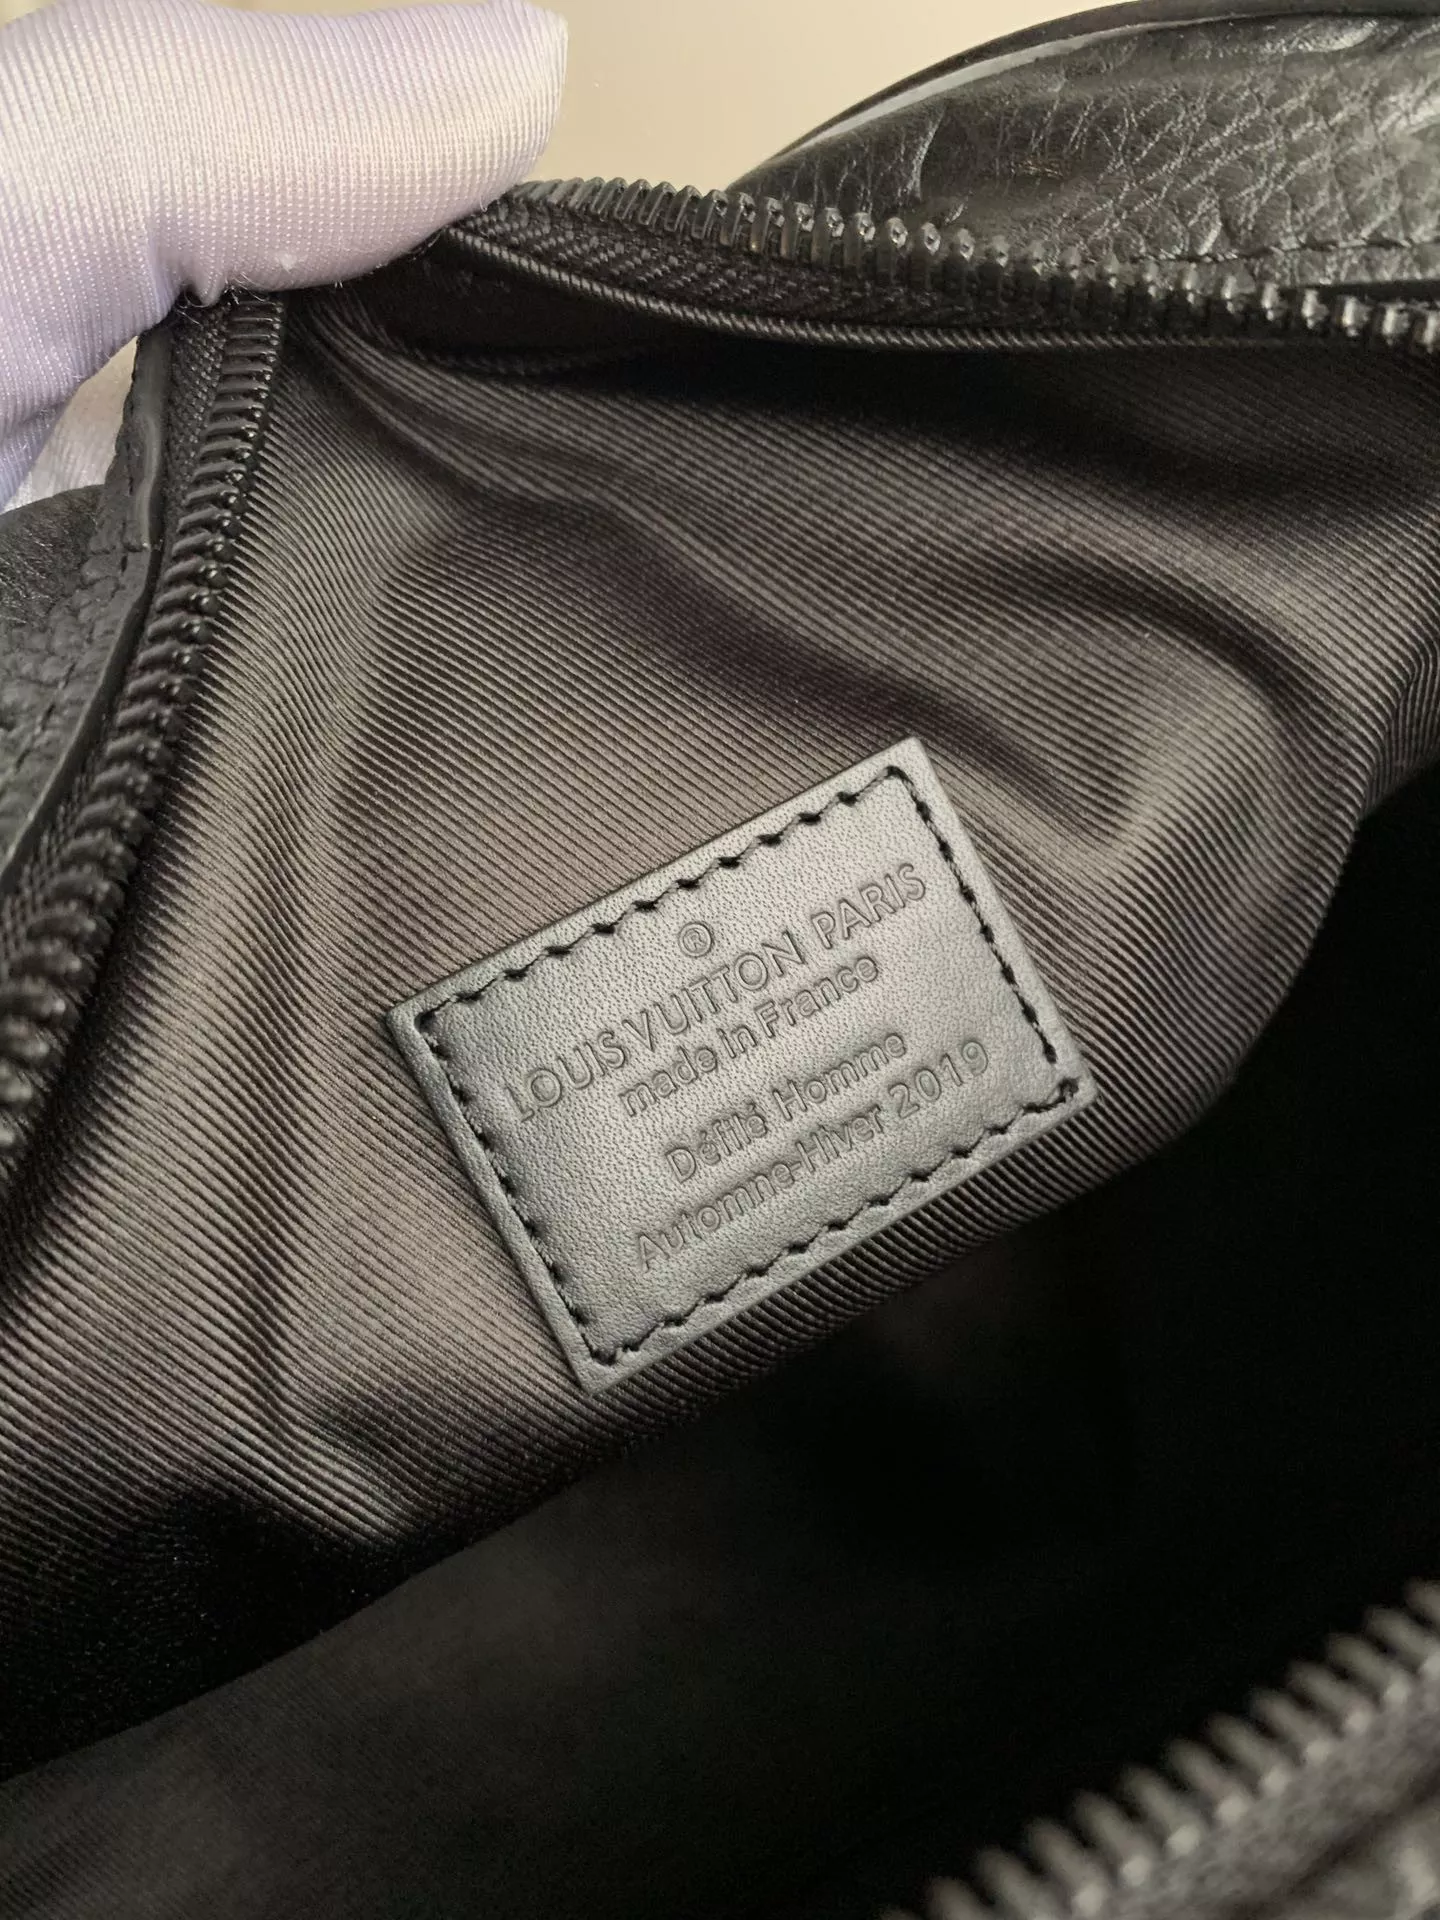 ルイヴィトンのバッグ、本当にきれいですね。黒もとても高級です